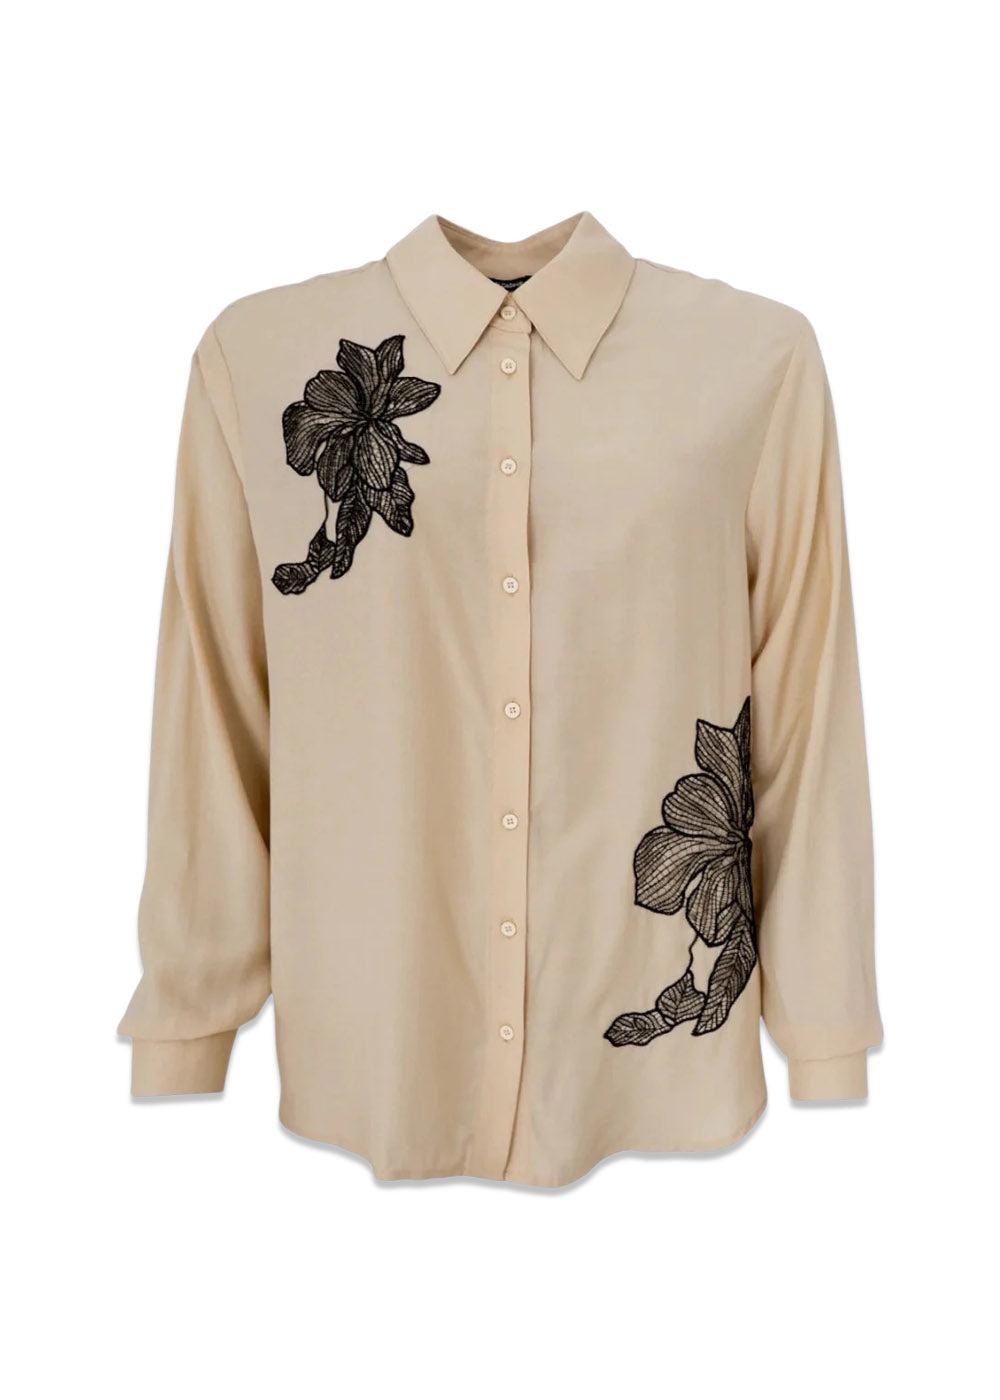 BCALIA shirt w/lace patch - Vanilla